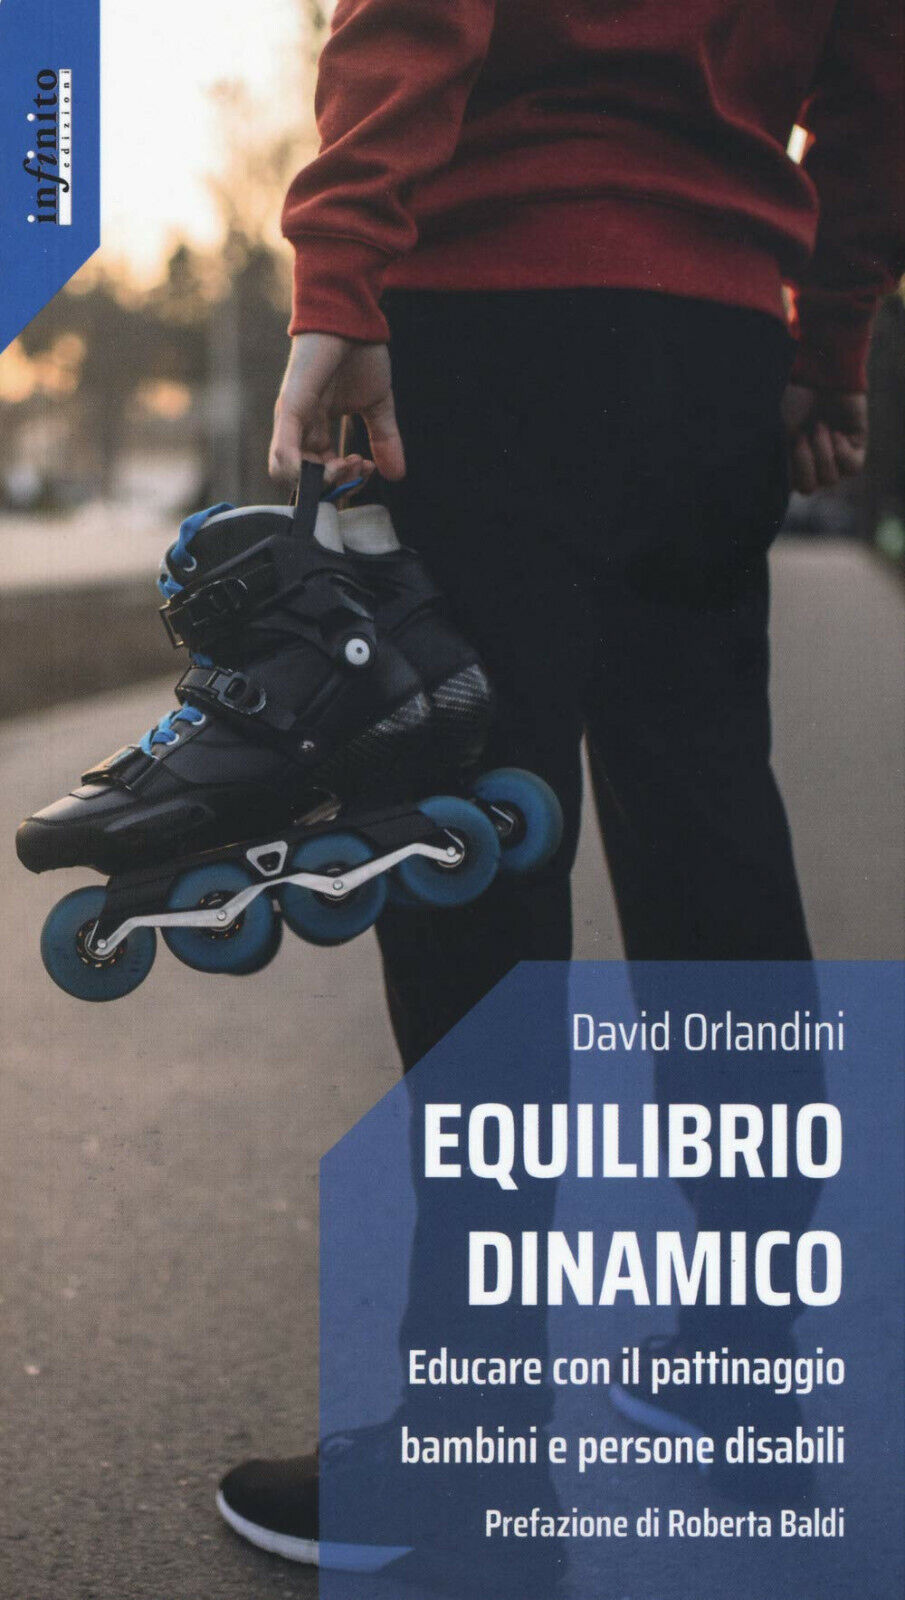 Equilibrio dinamico - David Orlandini - Infinito Edizioni, 2020